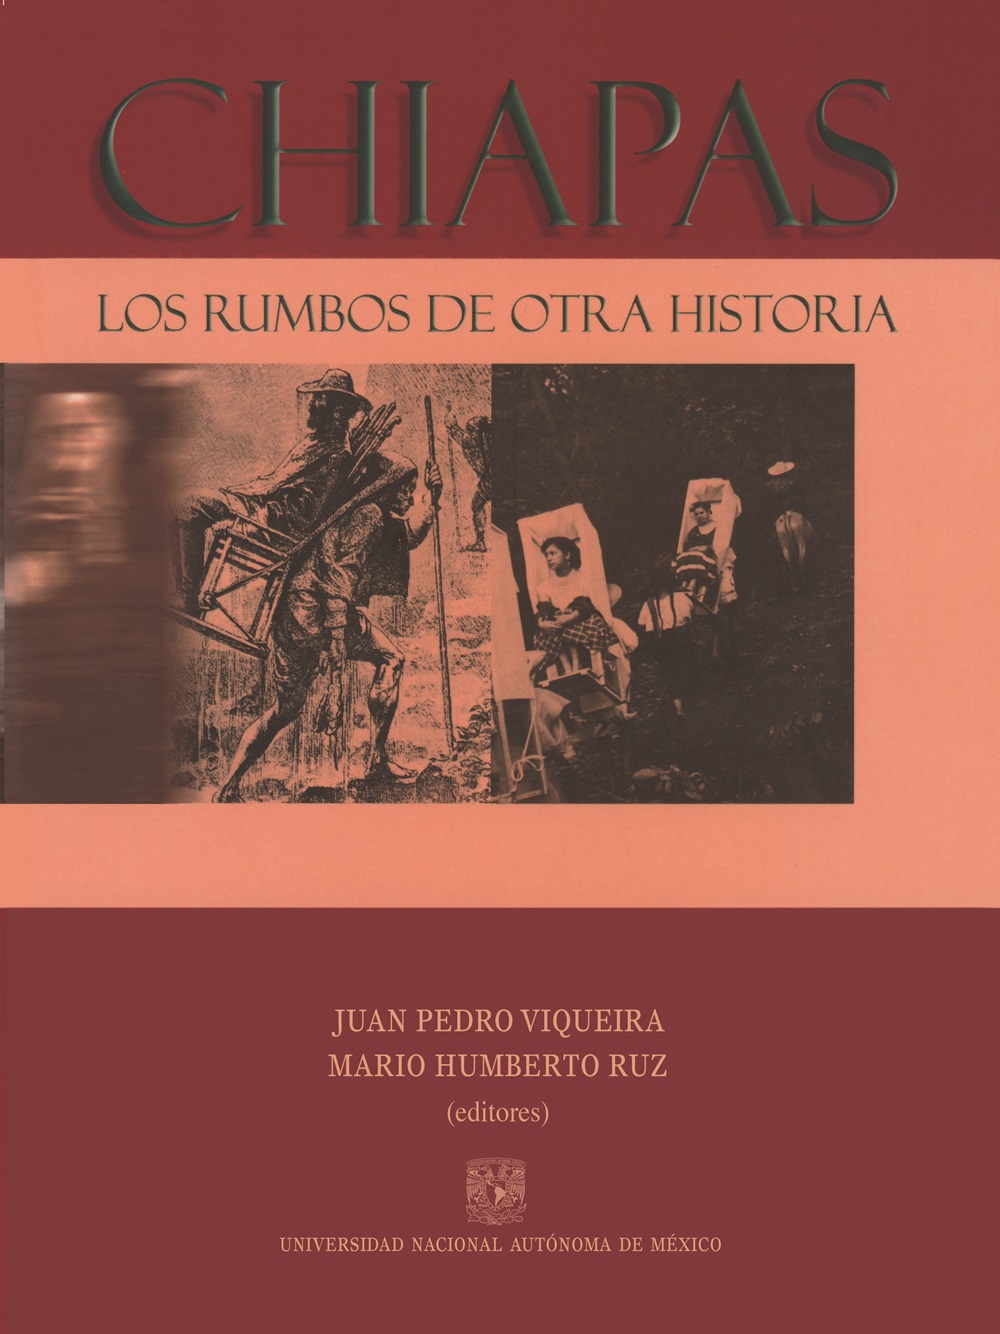 Chiapas. Los rumbos de otra historia